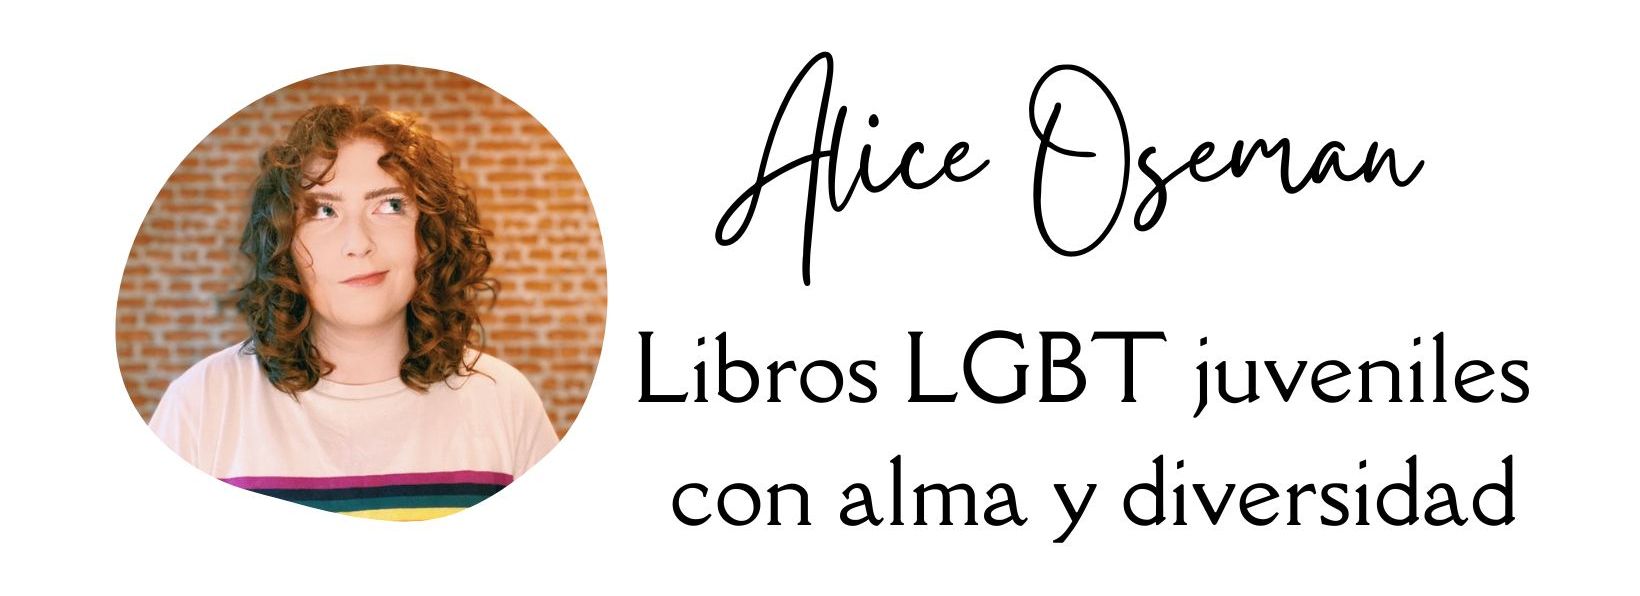 Alice Oseman, libros LGBT juveniles con alma y diversidad